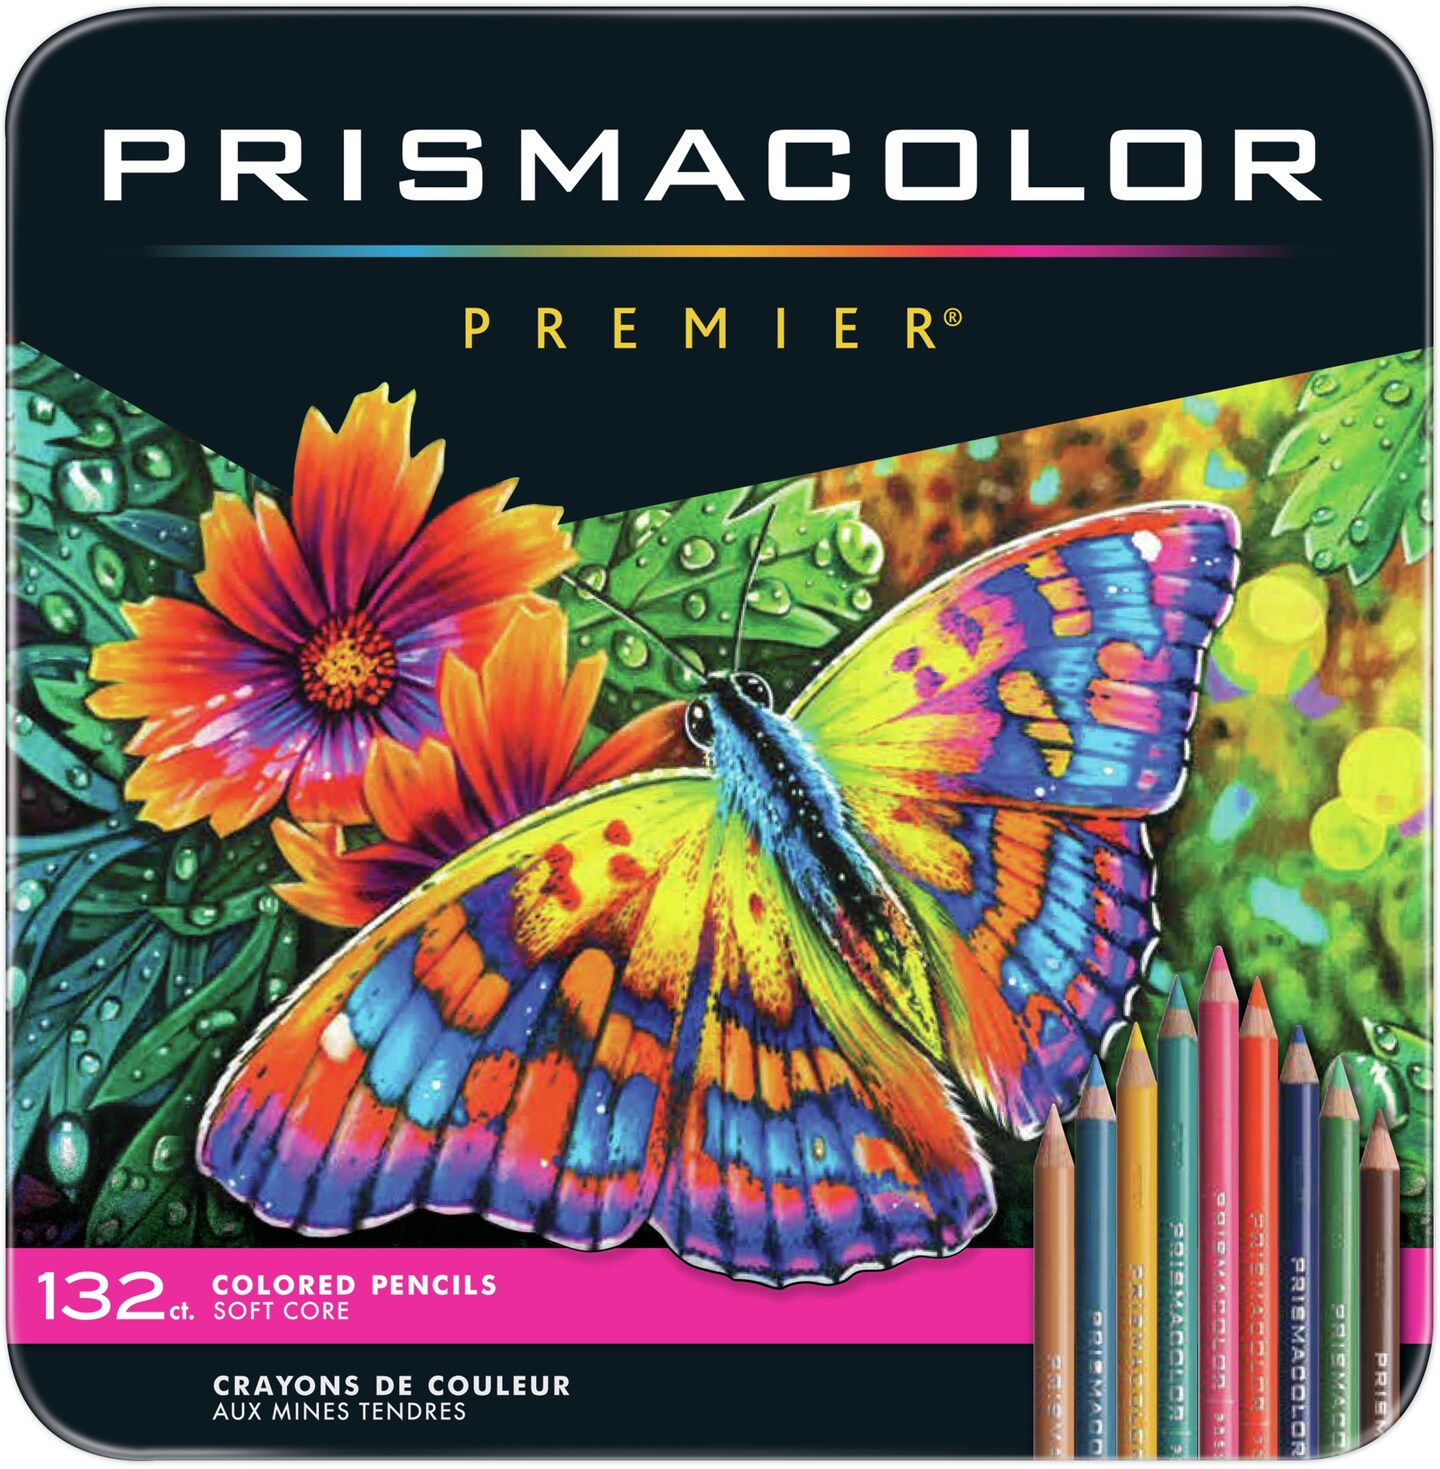 prismacolor-premier-colored-pencils-132-pkg-accessories-michaels